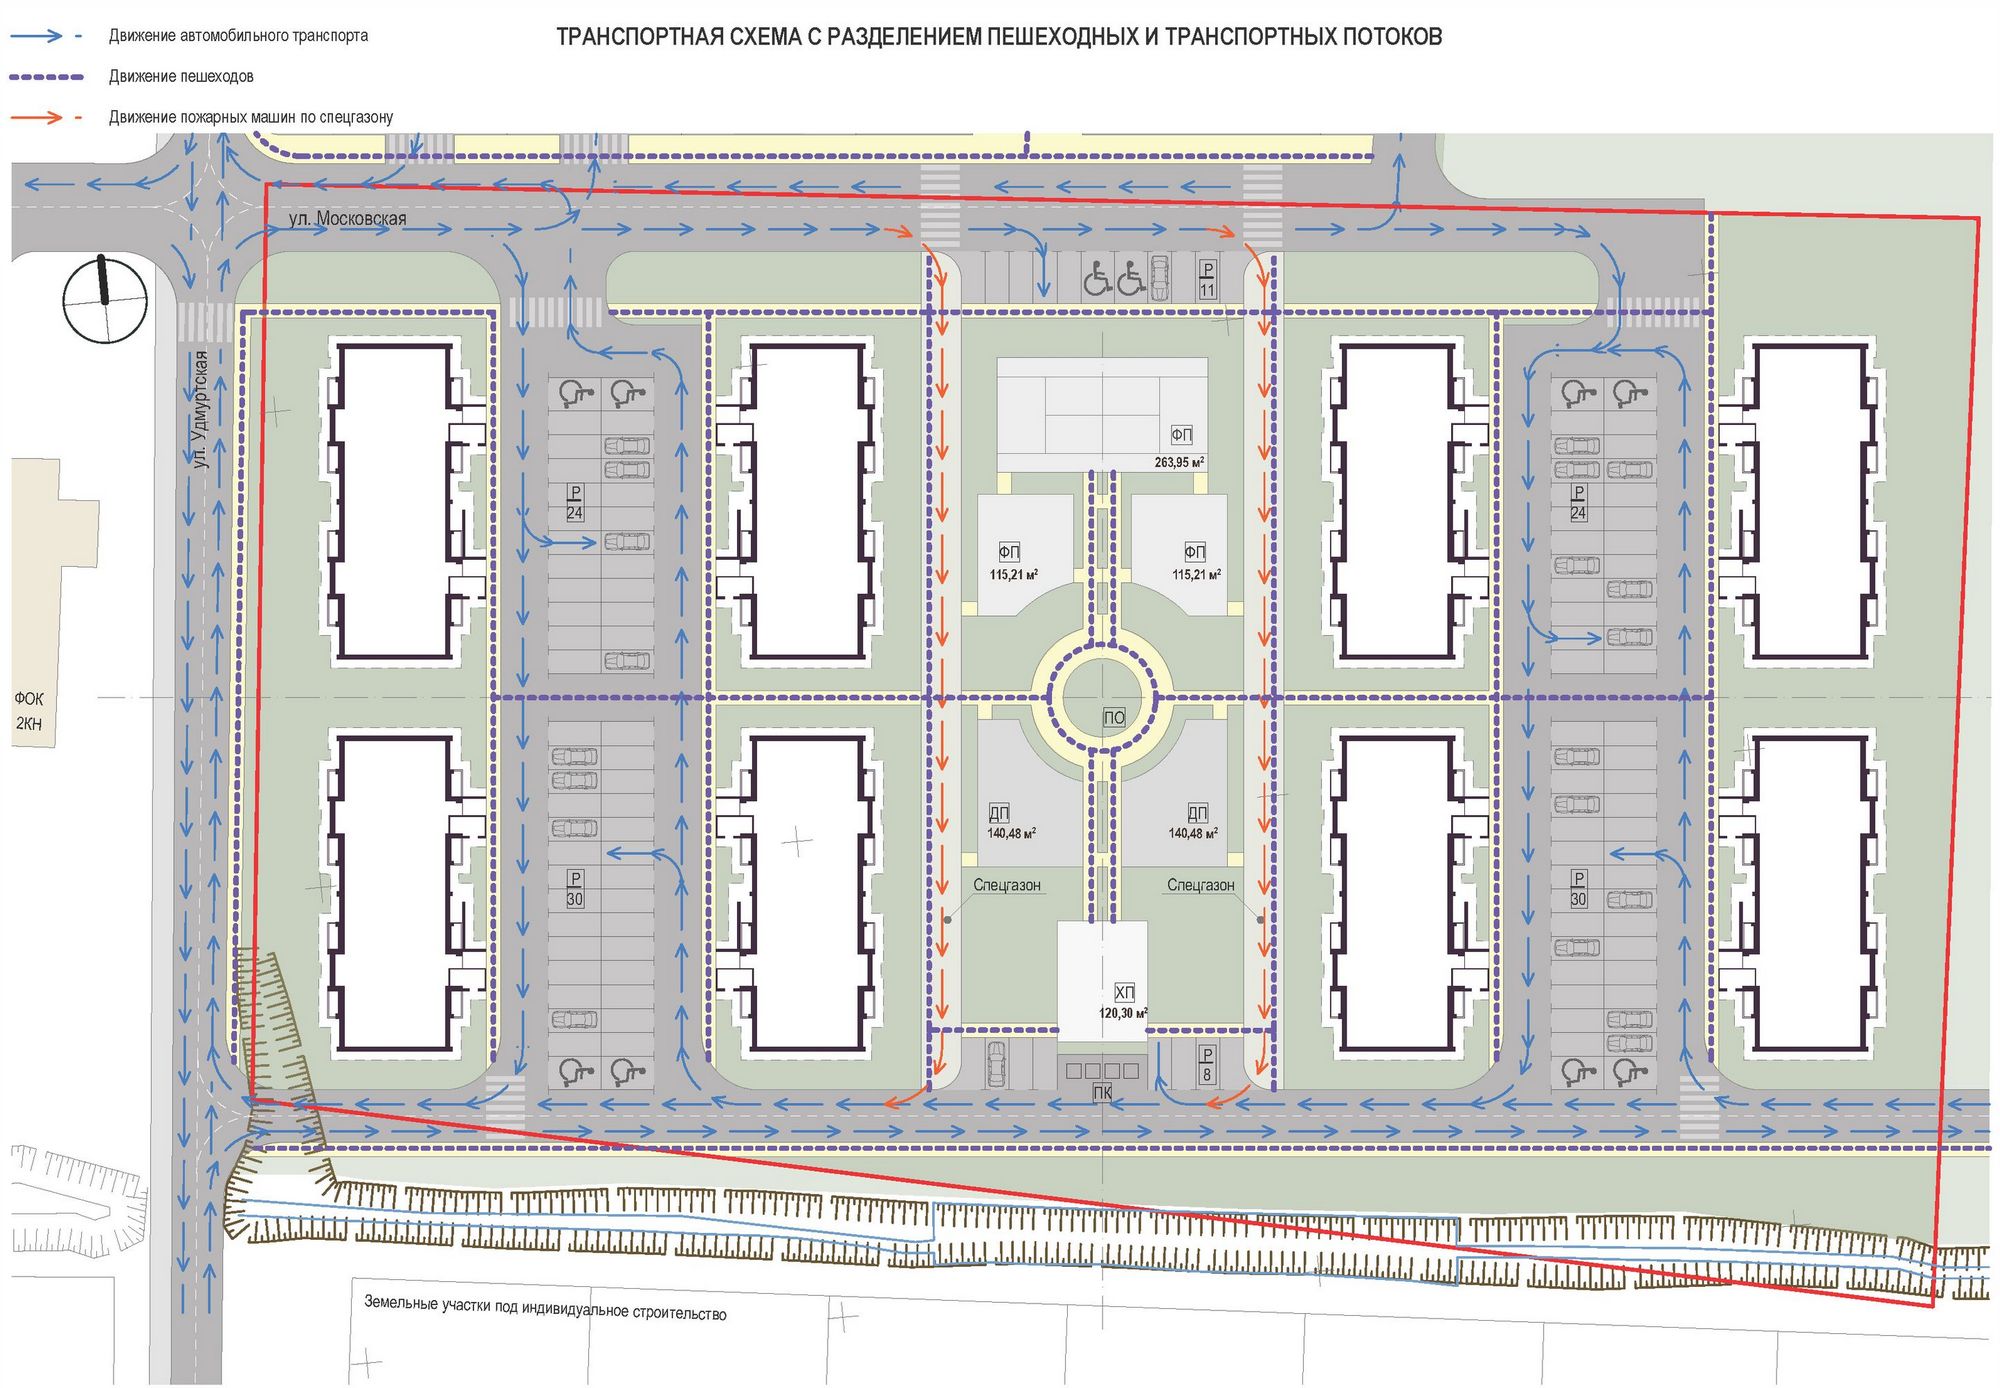 РК Проект. Проект планировки в микрорайоне «Южный» в п. Ува. Номинация: Комплексный проект мало- и средне-этажной застройки